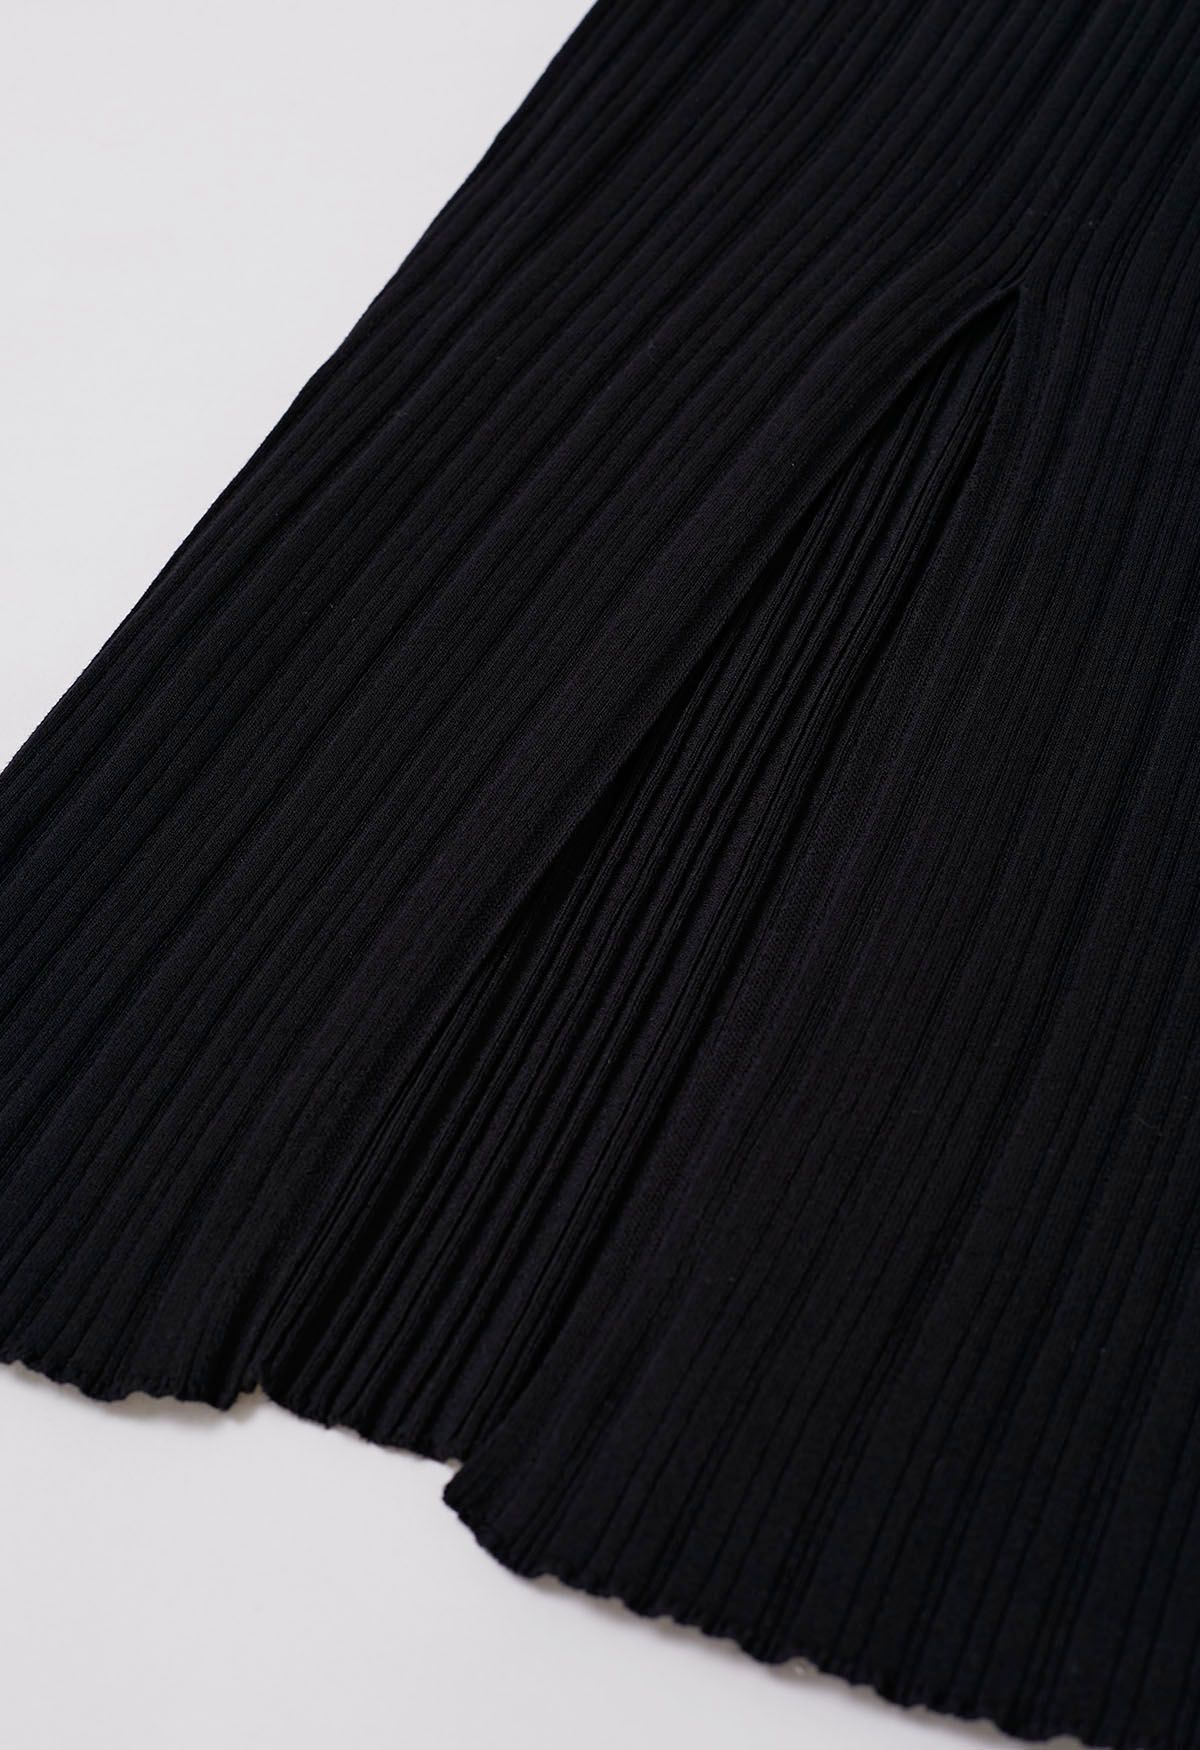 Vestido largo ajustado de punto sin mangas con abertura en la espalda en negro